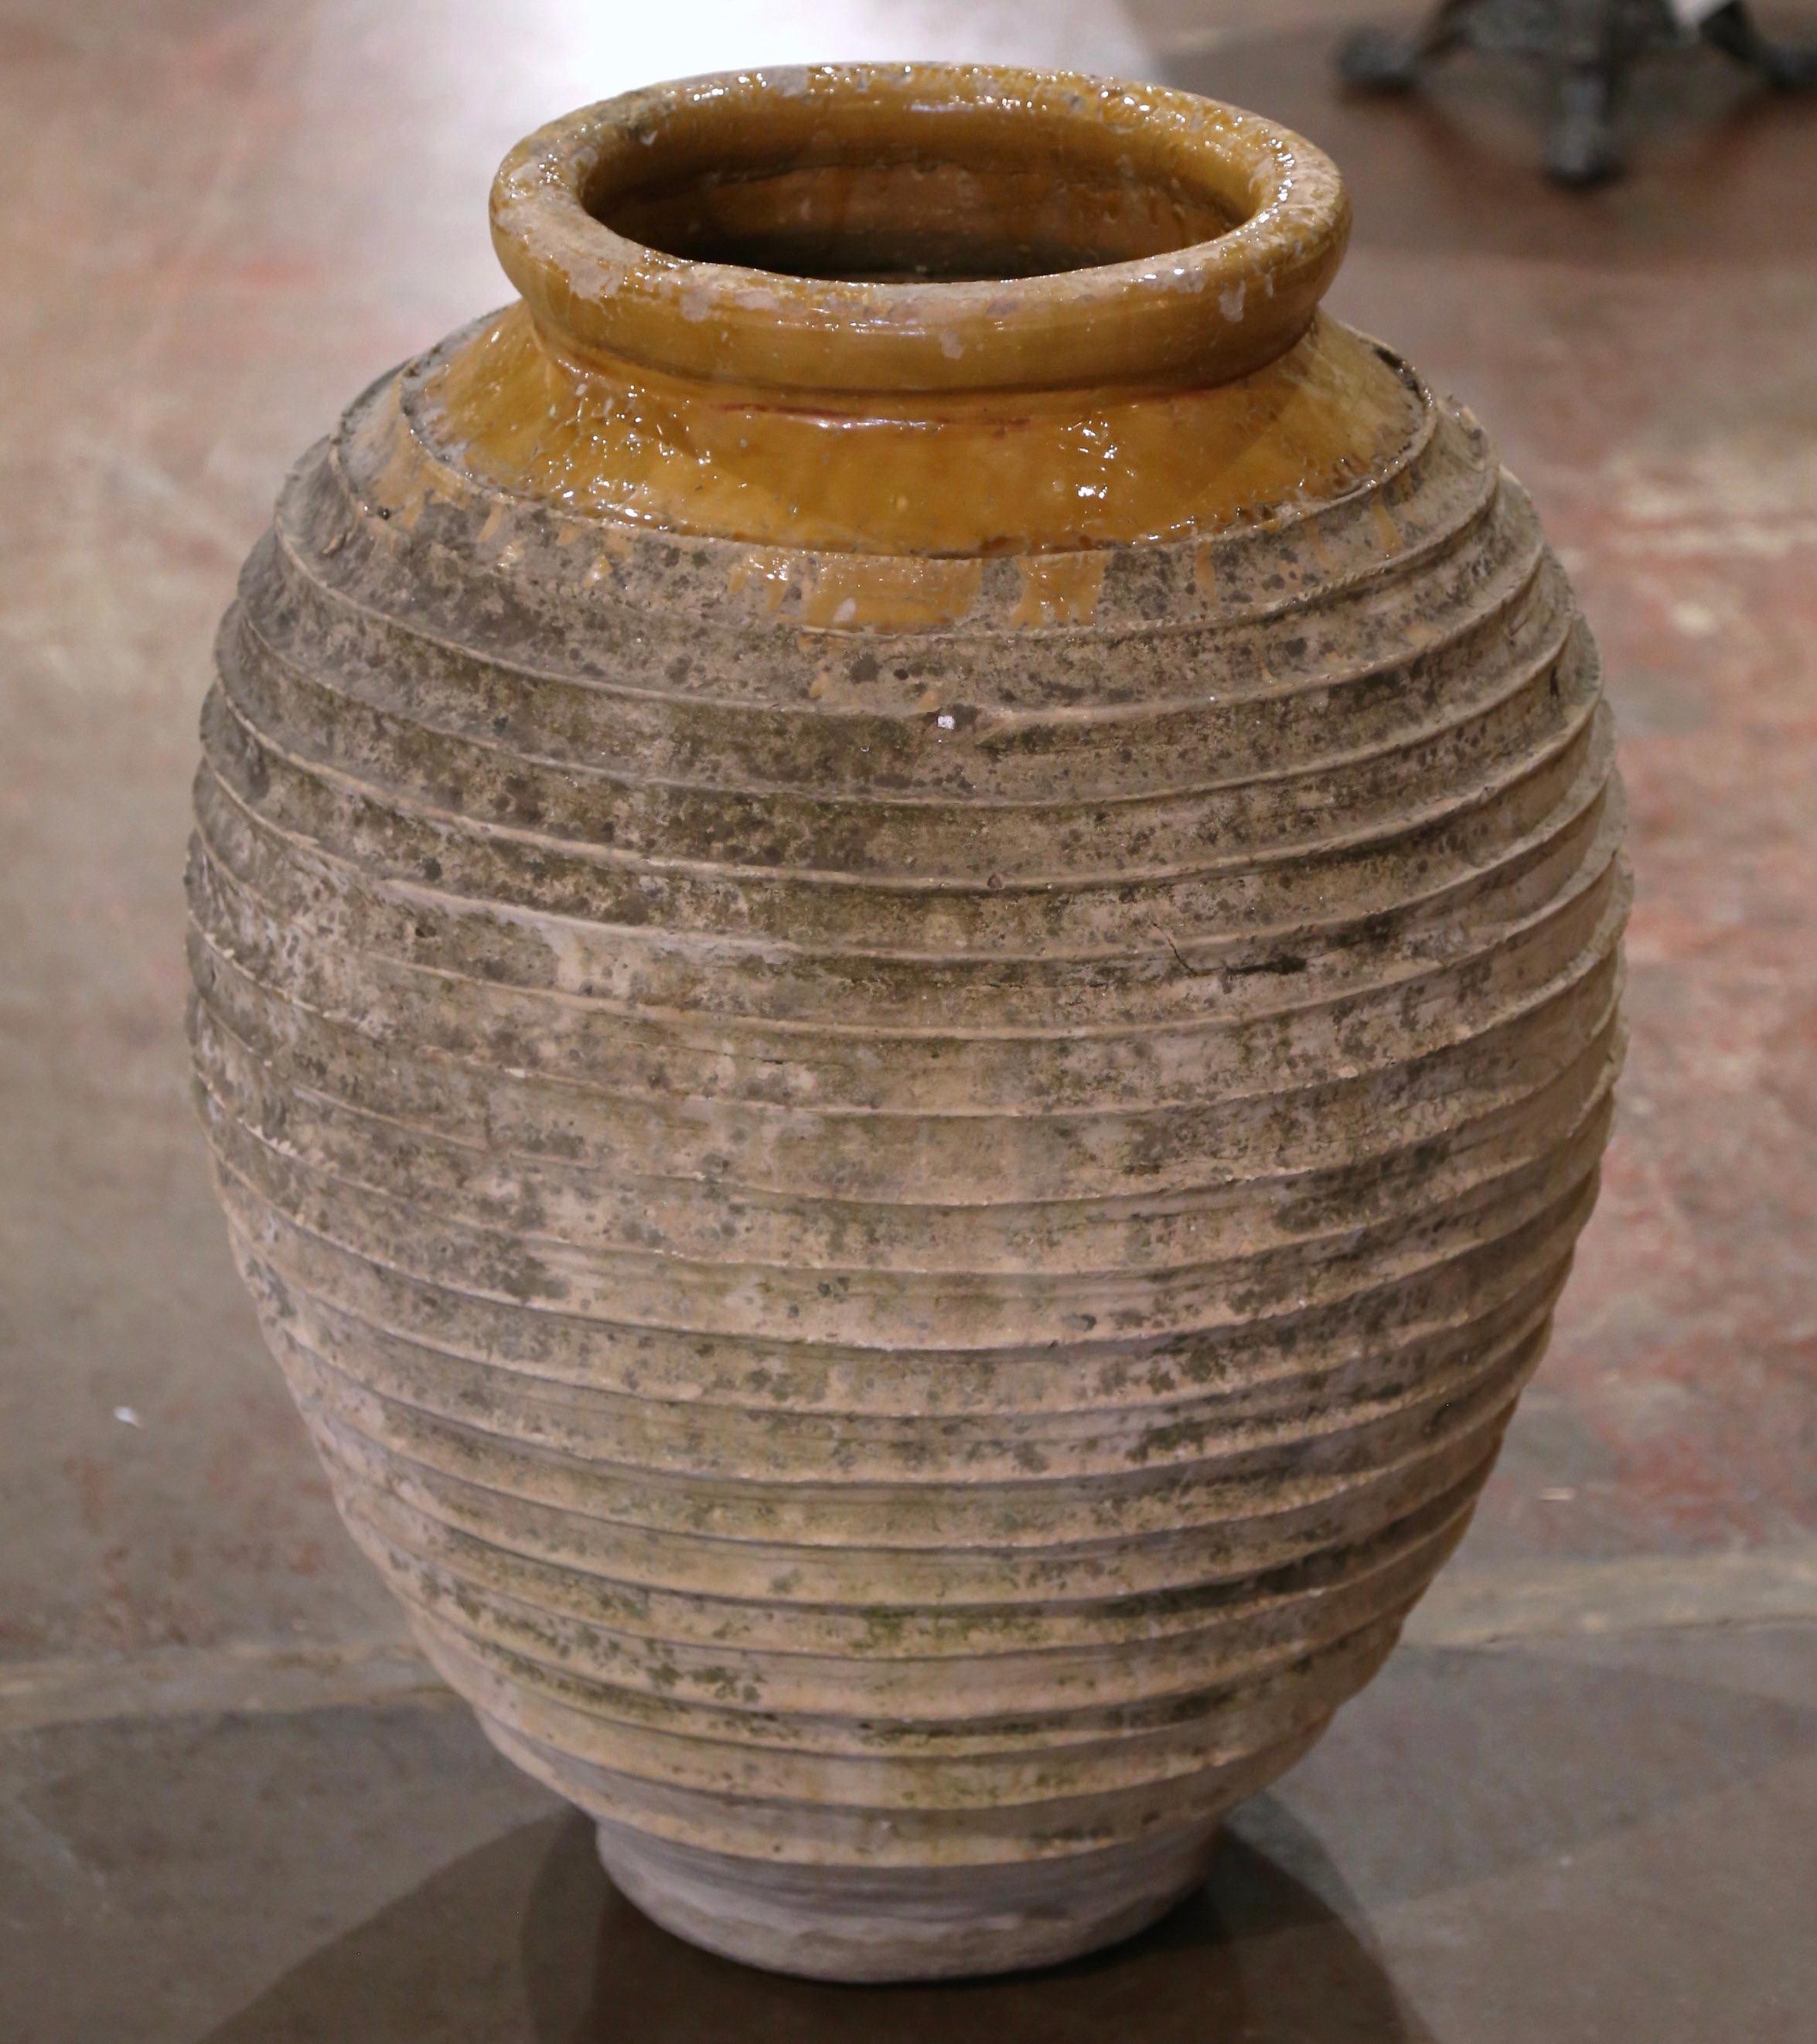 Cette élégante jarre à huile d'olive antique a été fabriquée à la main en Grèce vers 1860.  De forme ronde, avec une base et un col étroits, ce grand récipient présente un bord roulé sur le dessus, accentué par une glaçure couleur moutarde. Le large